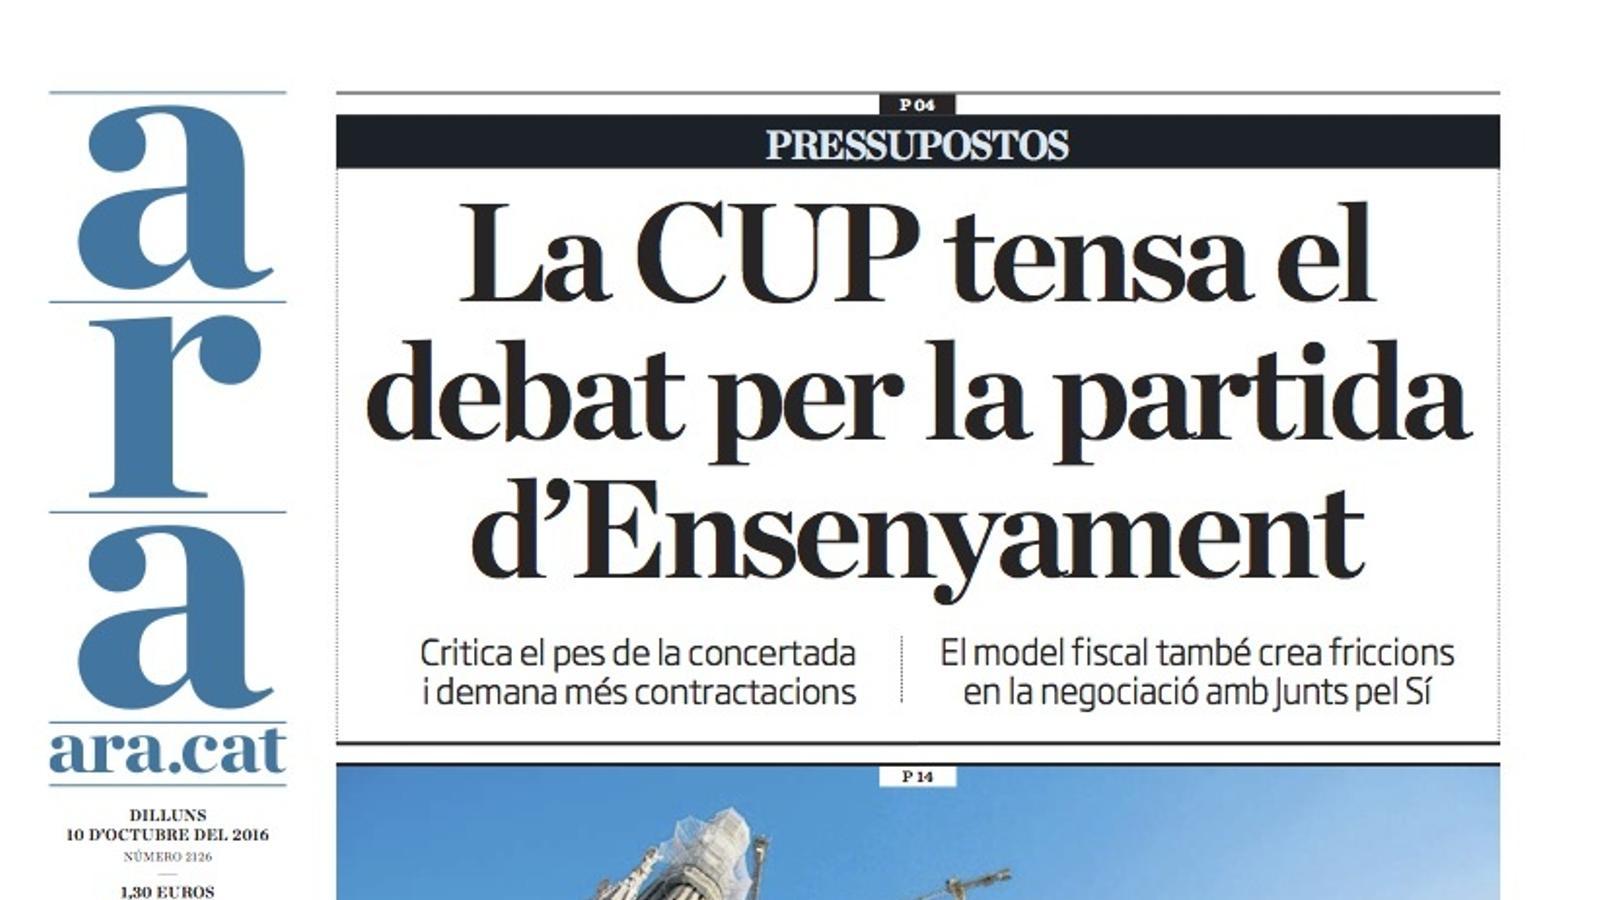 "La CUP tensa el debat per la partida d'Ensenyament", portada de l'ARA